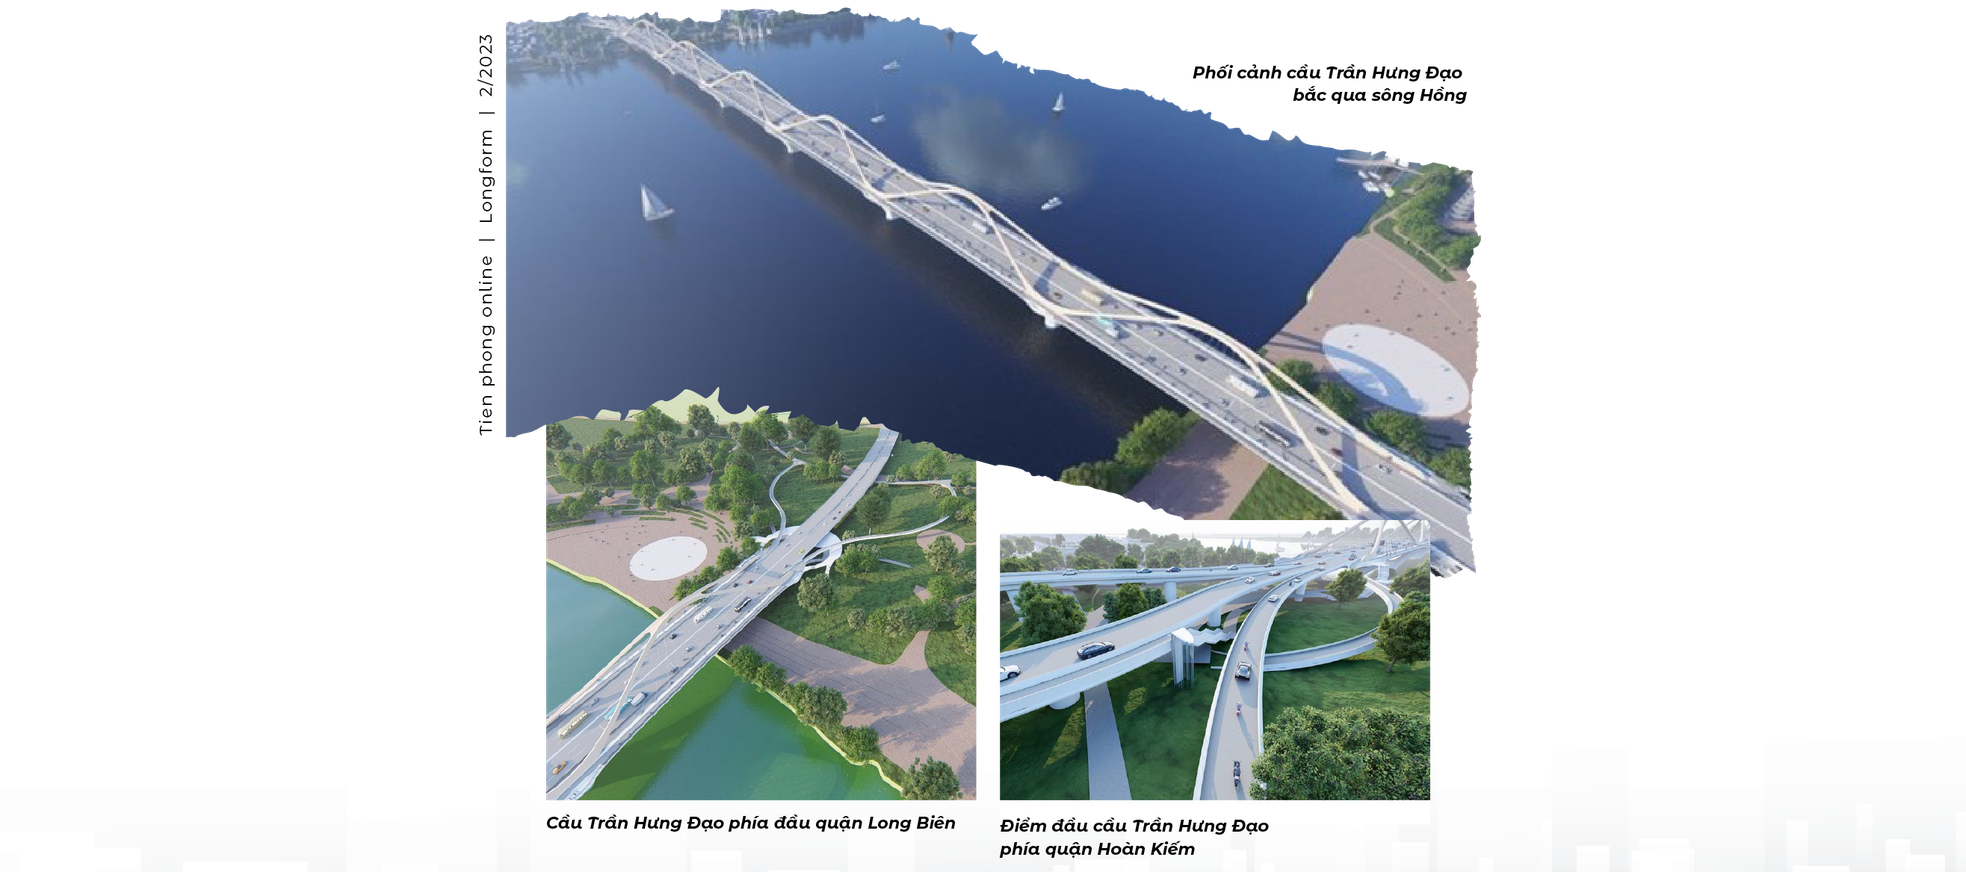 4 cầu vượt sông Hồng chuẩn bị khởi công xây dựng - Ảnh 8.